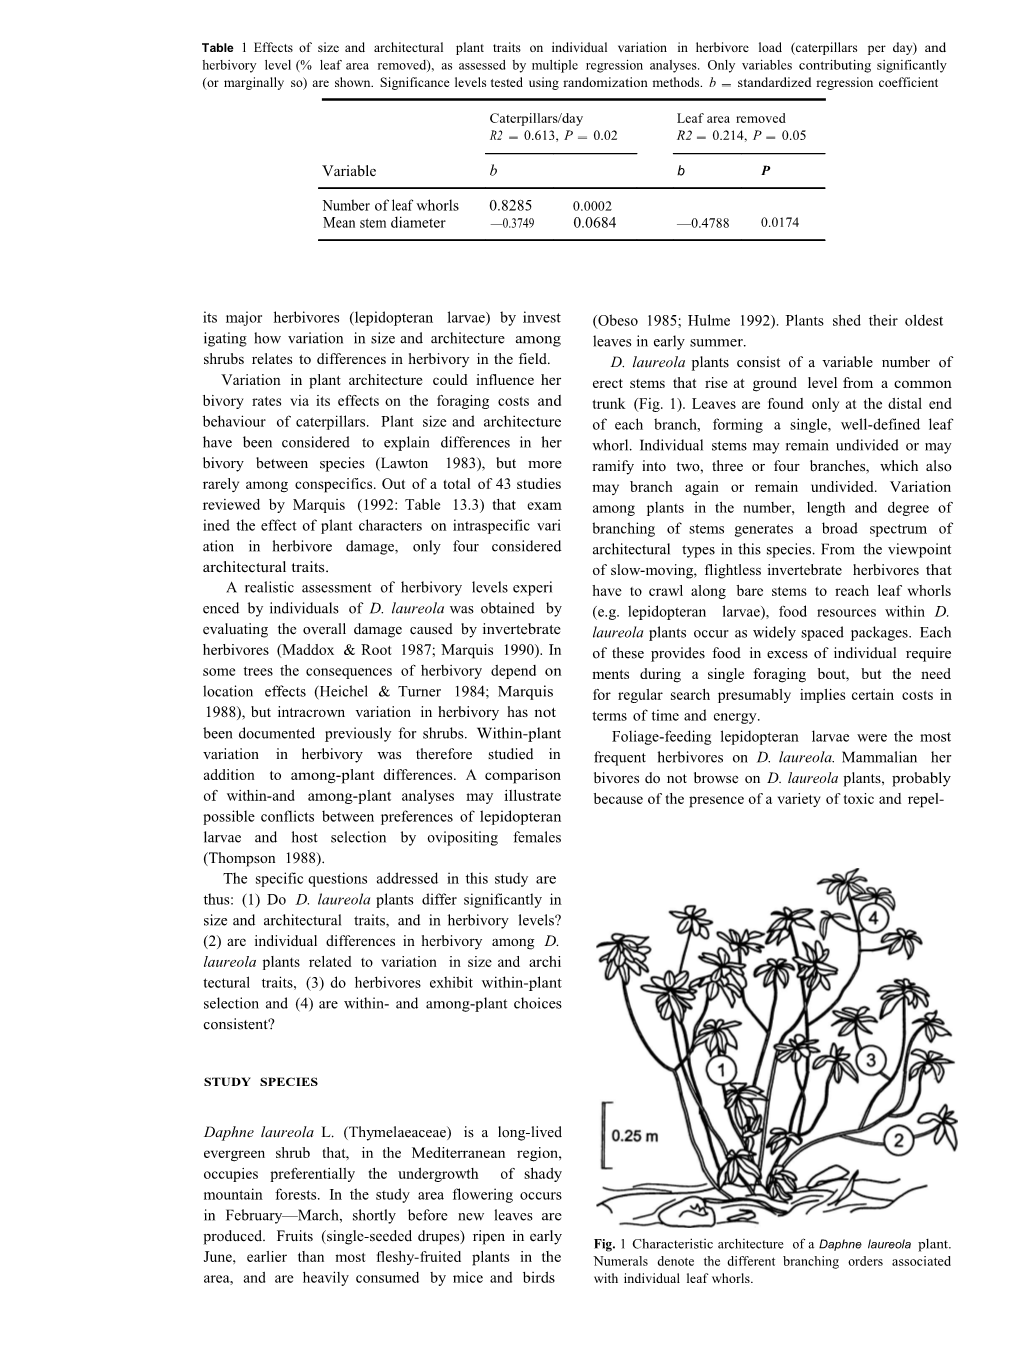 Variation Inherbivorywithinandamongplantsof Daphnelaureola(Thymelaeaceae):Correlationwithplant